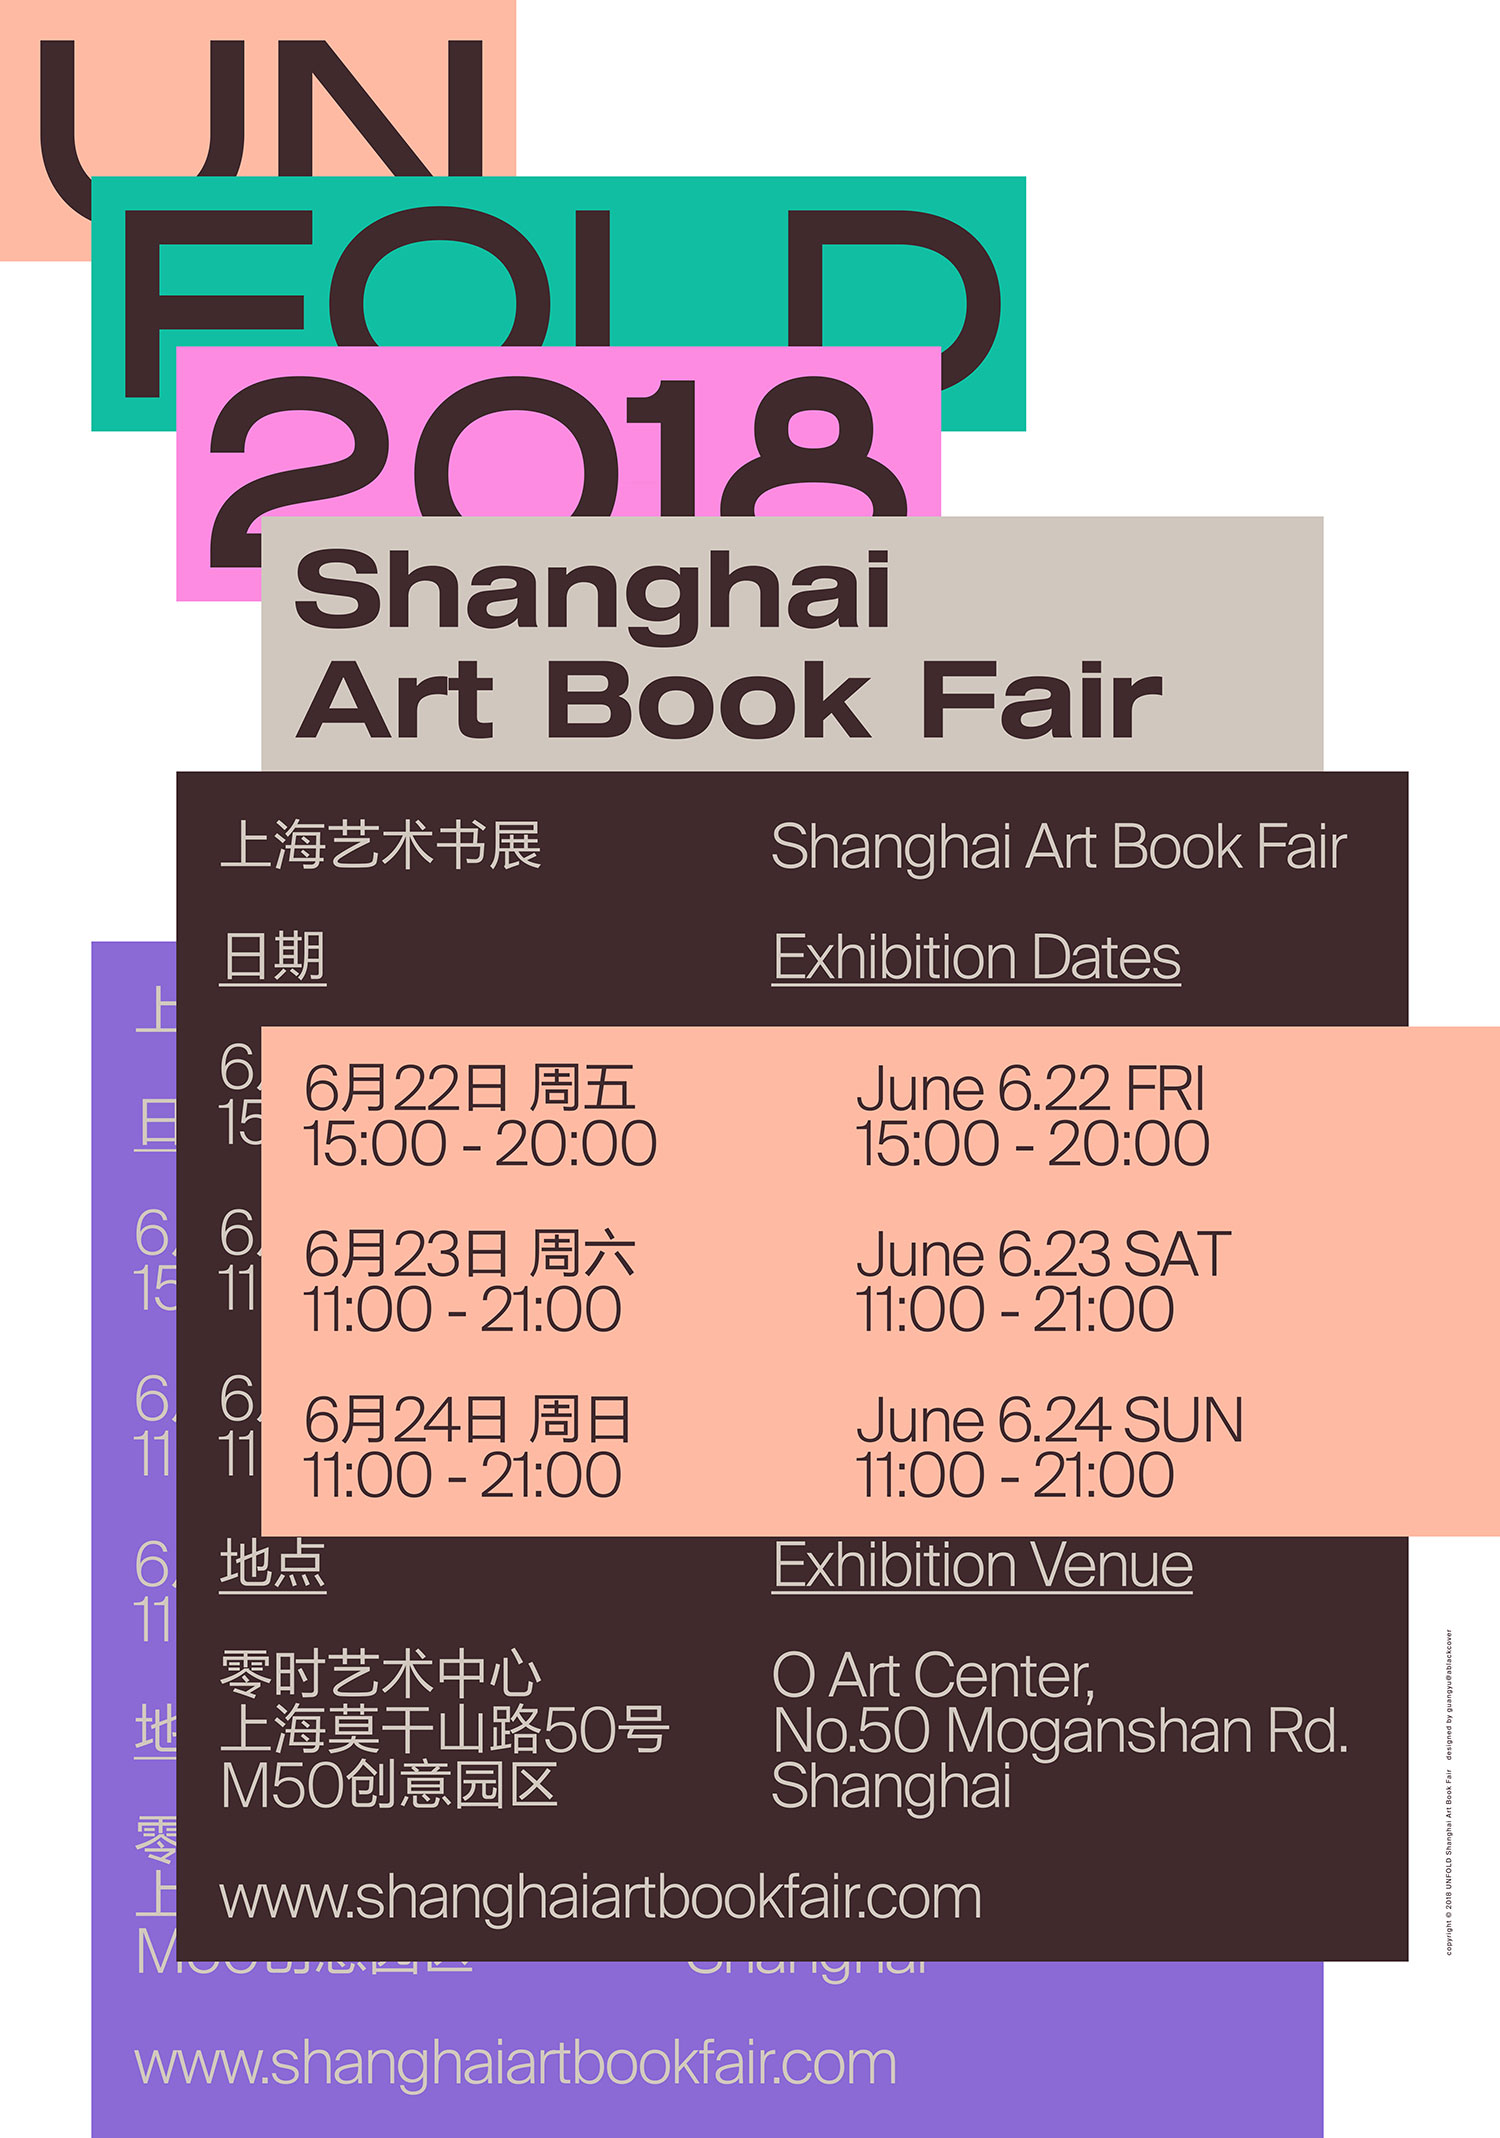 UNFOLD 2018 Shanghai Art Book Fair